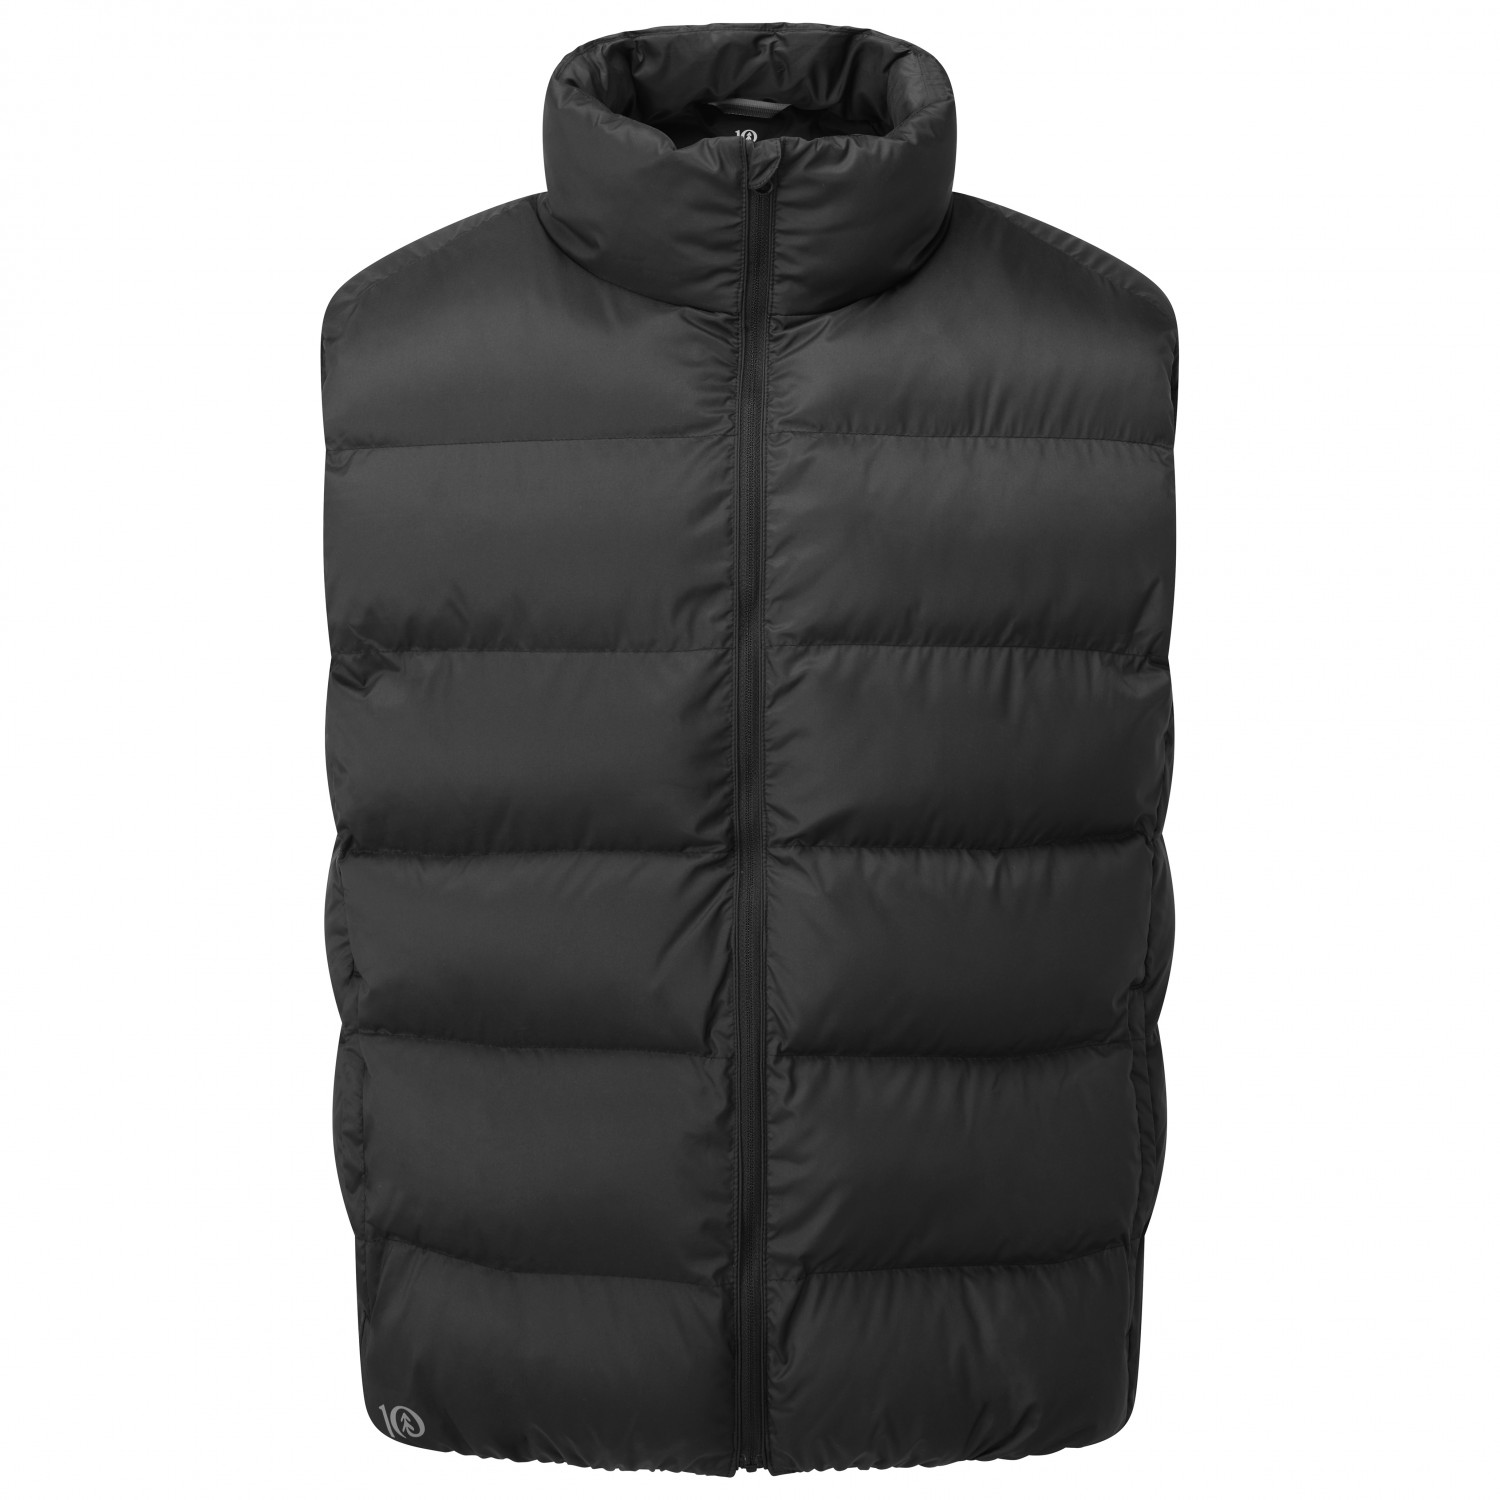 Жилет из синтетического волокна Tentree Puffer Vest, цвет Meteorite Black жилет cropped puffer vest cotton on body цвет black